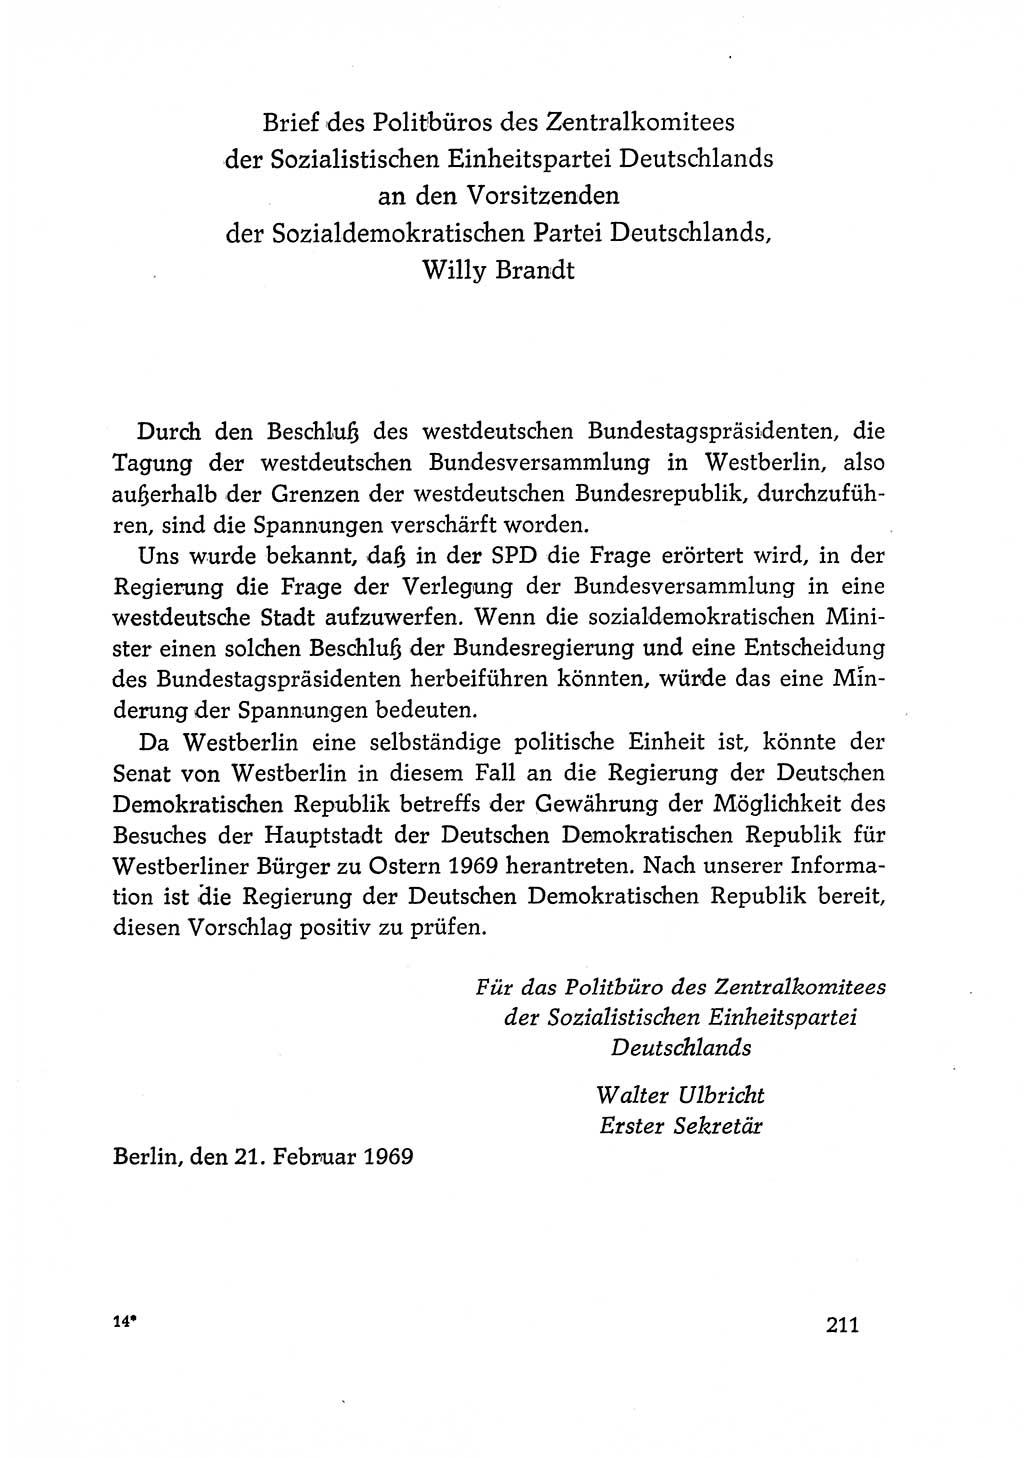 Dokumente der Sozialistischen Einheitspartei Deutschlands (SED) [Deutsche Demokratische Republik (DDR)] 1968-1969, Seite 211 (Dok. SED DDR 1968-1969, S. 211)